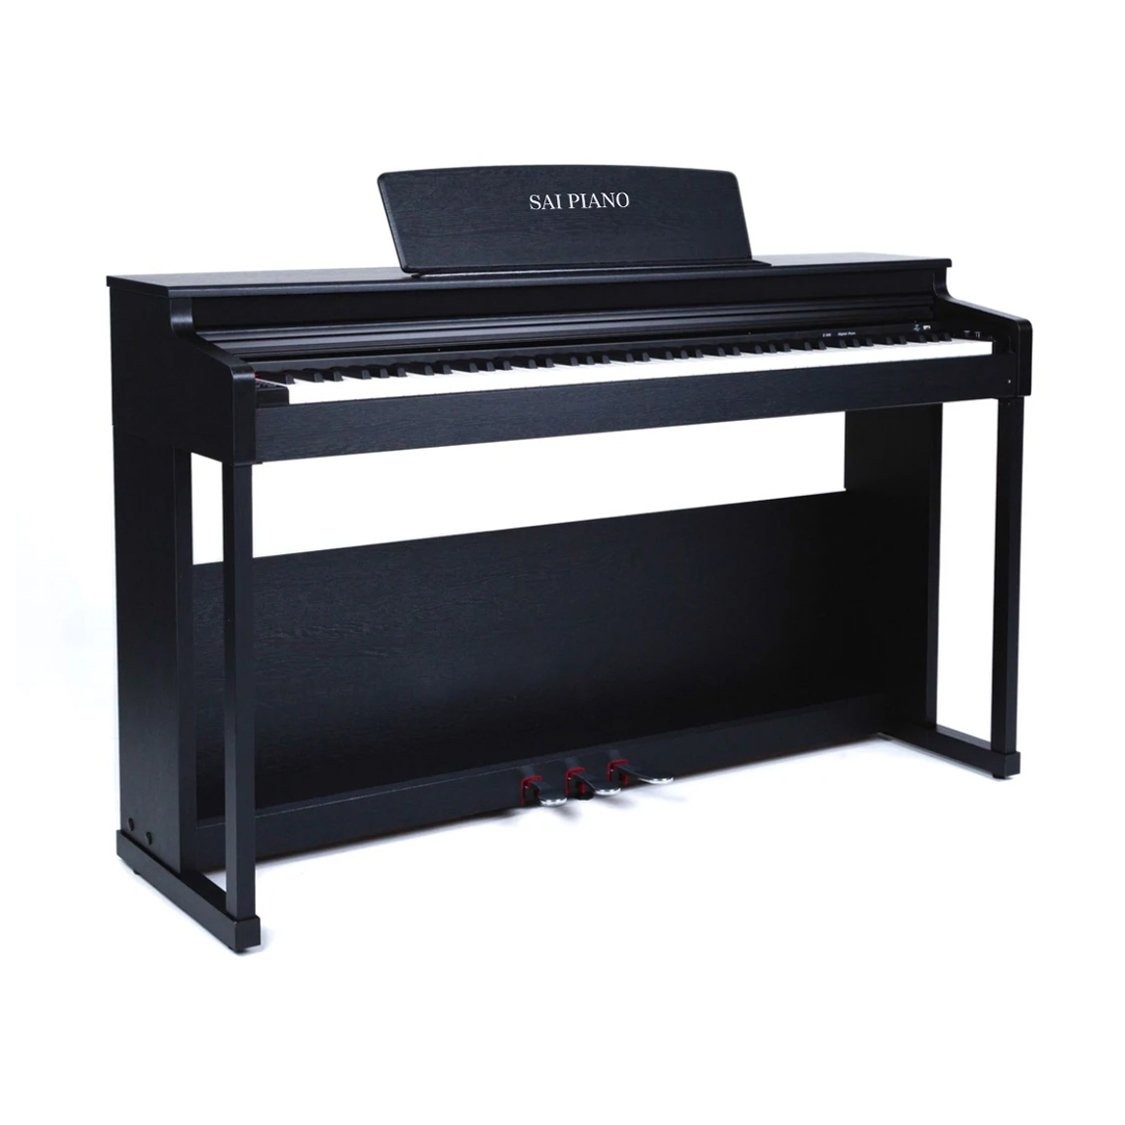 Цифровые пианино Sai Piano P-110BK 88 k eys foldable piano цифровое пианино портативный электронный клавишный пианино